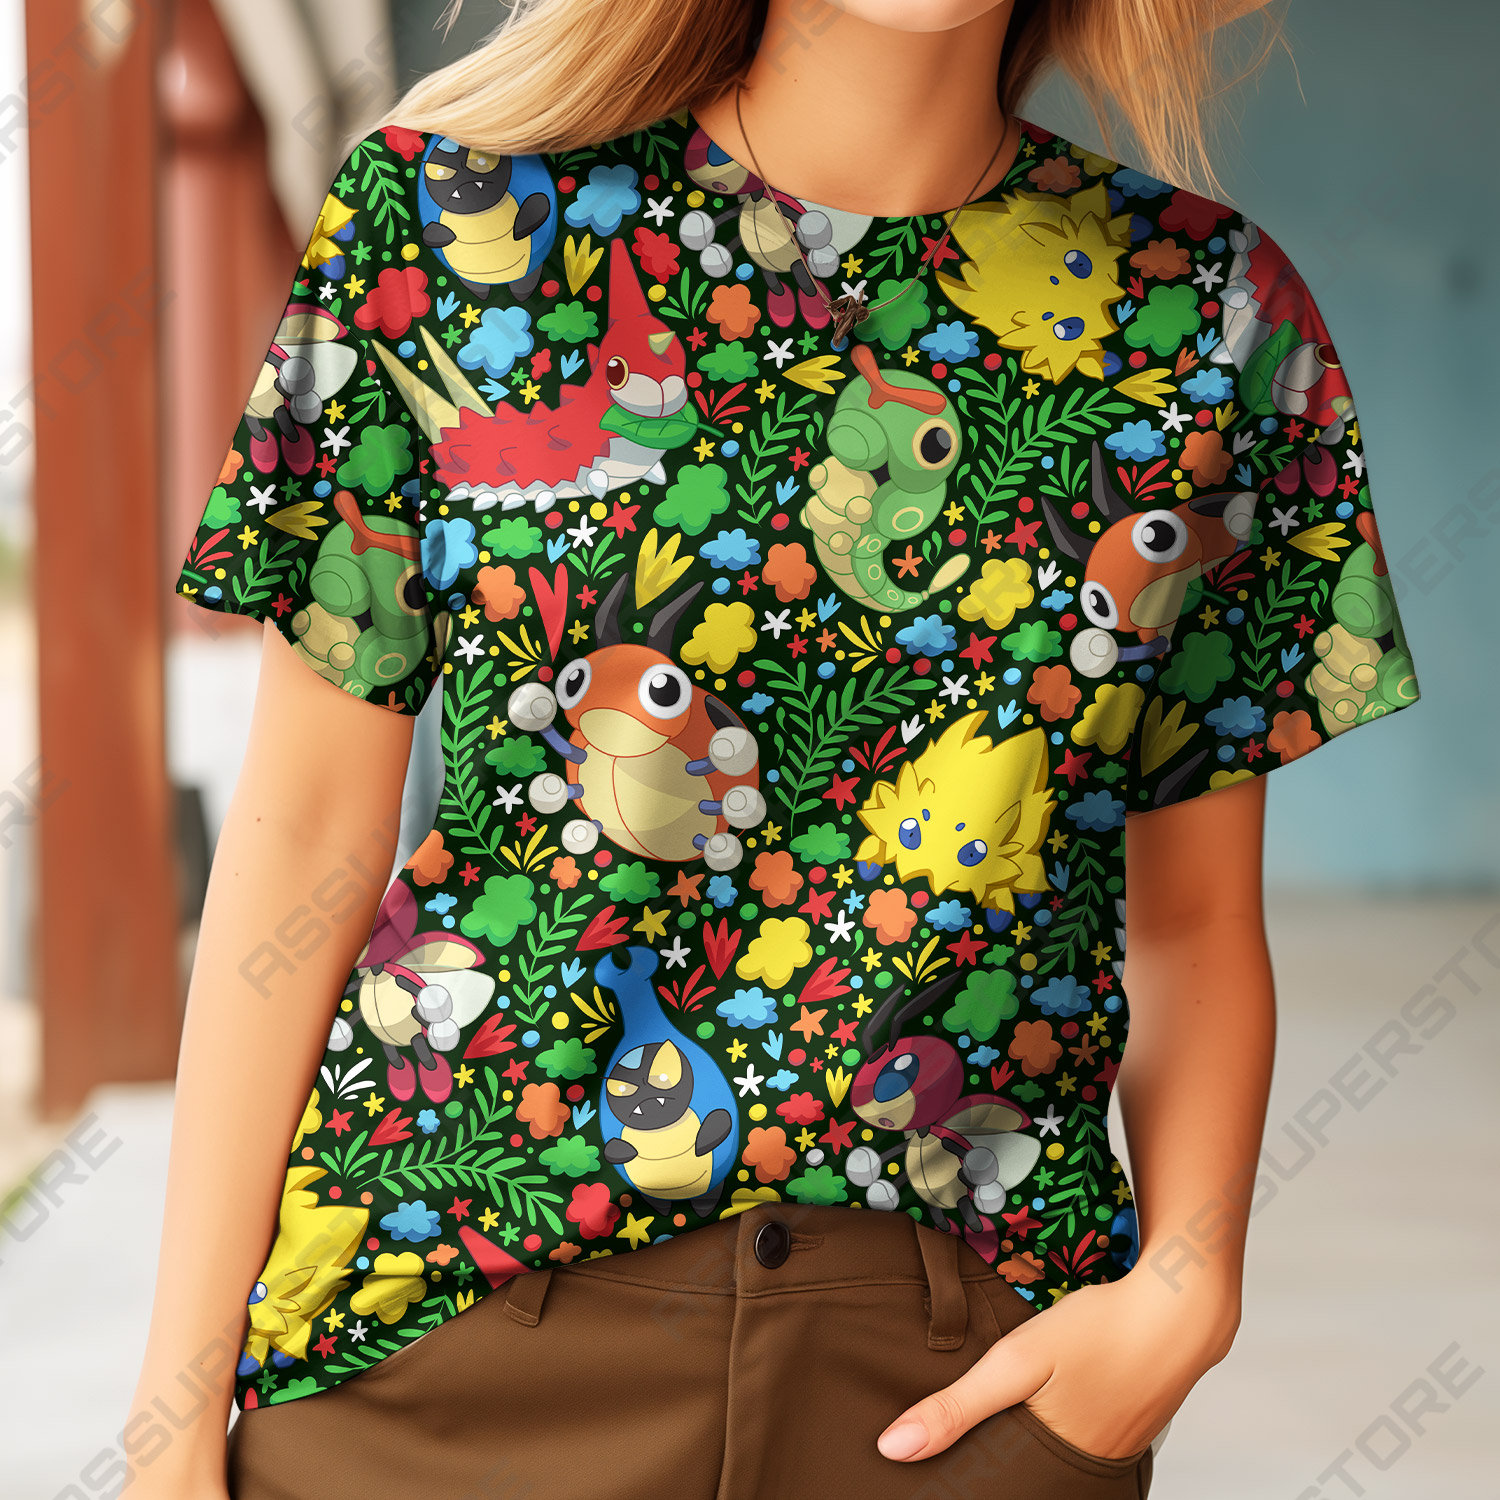 Wurmple Caterpie Tshirt Design, Wurmple Ledyba Anime Emotes Tshirt